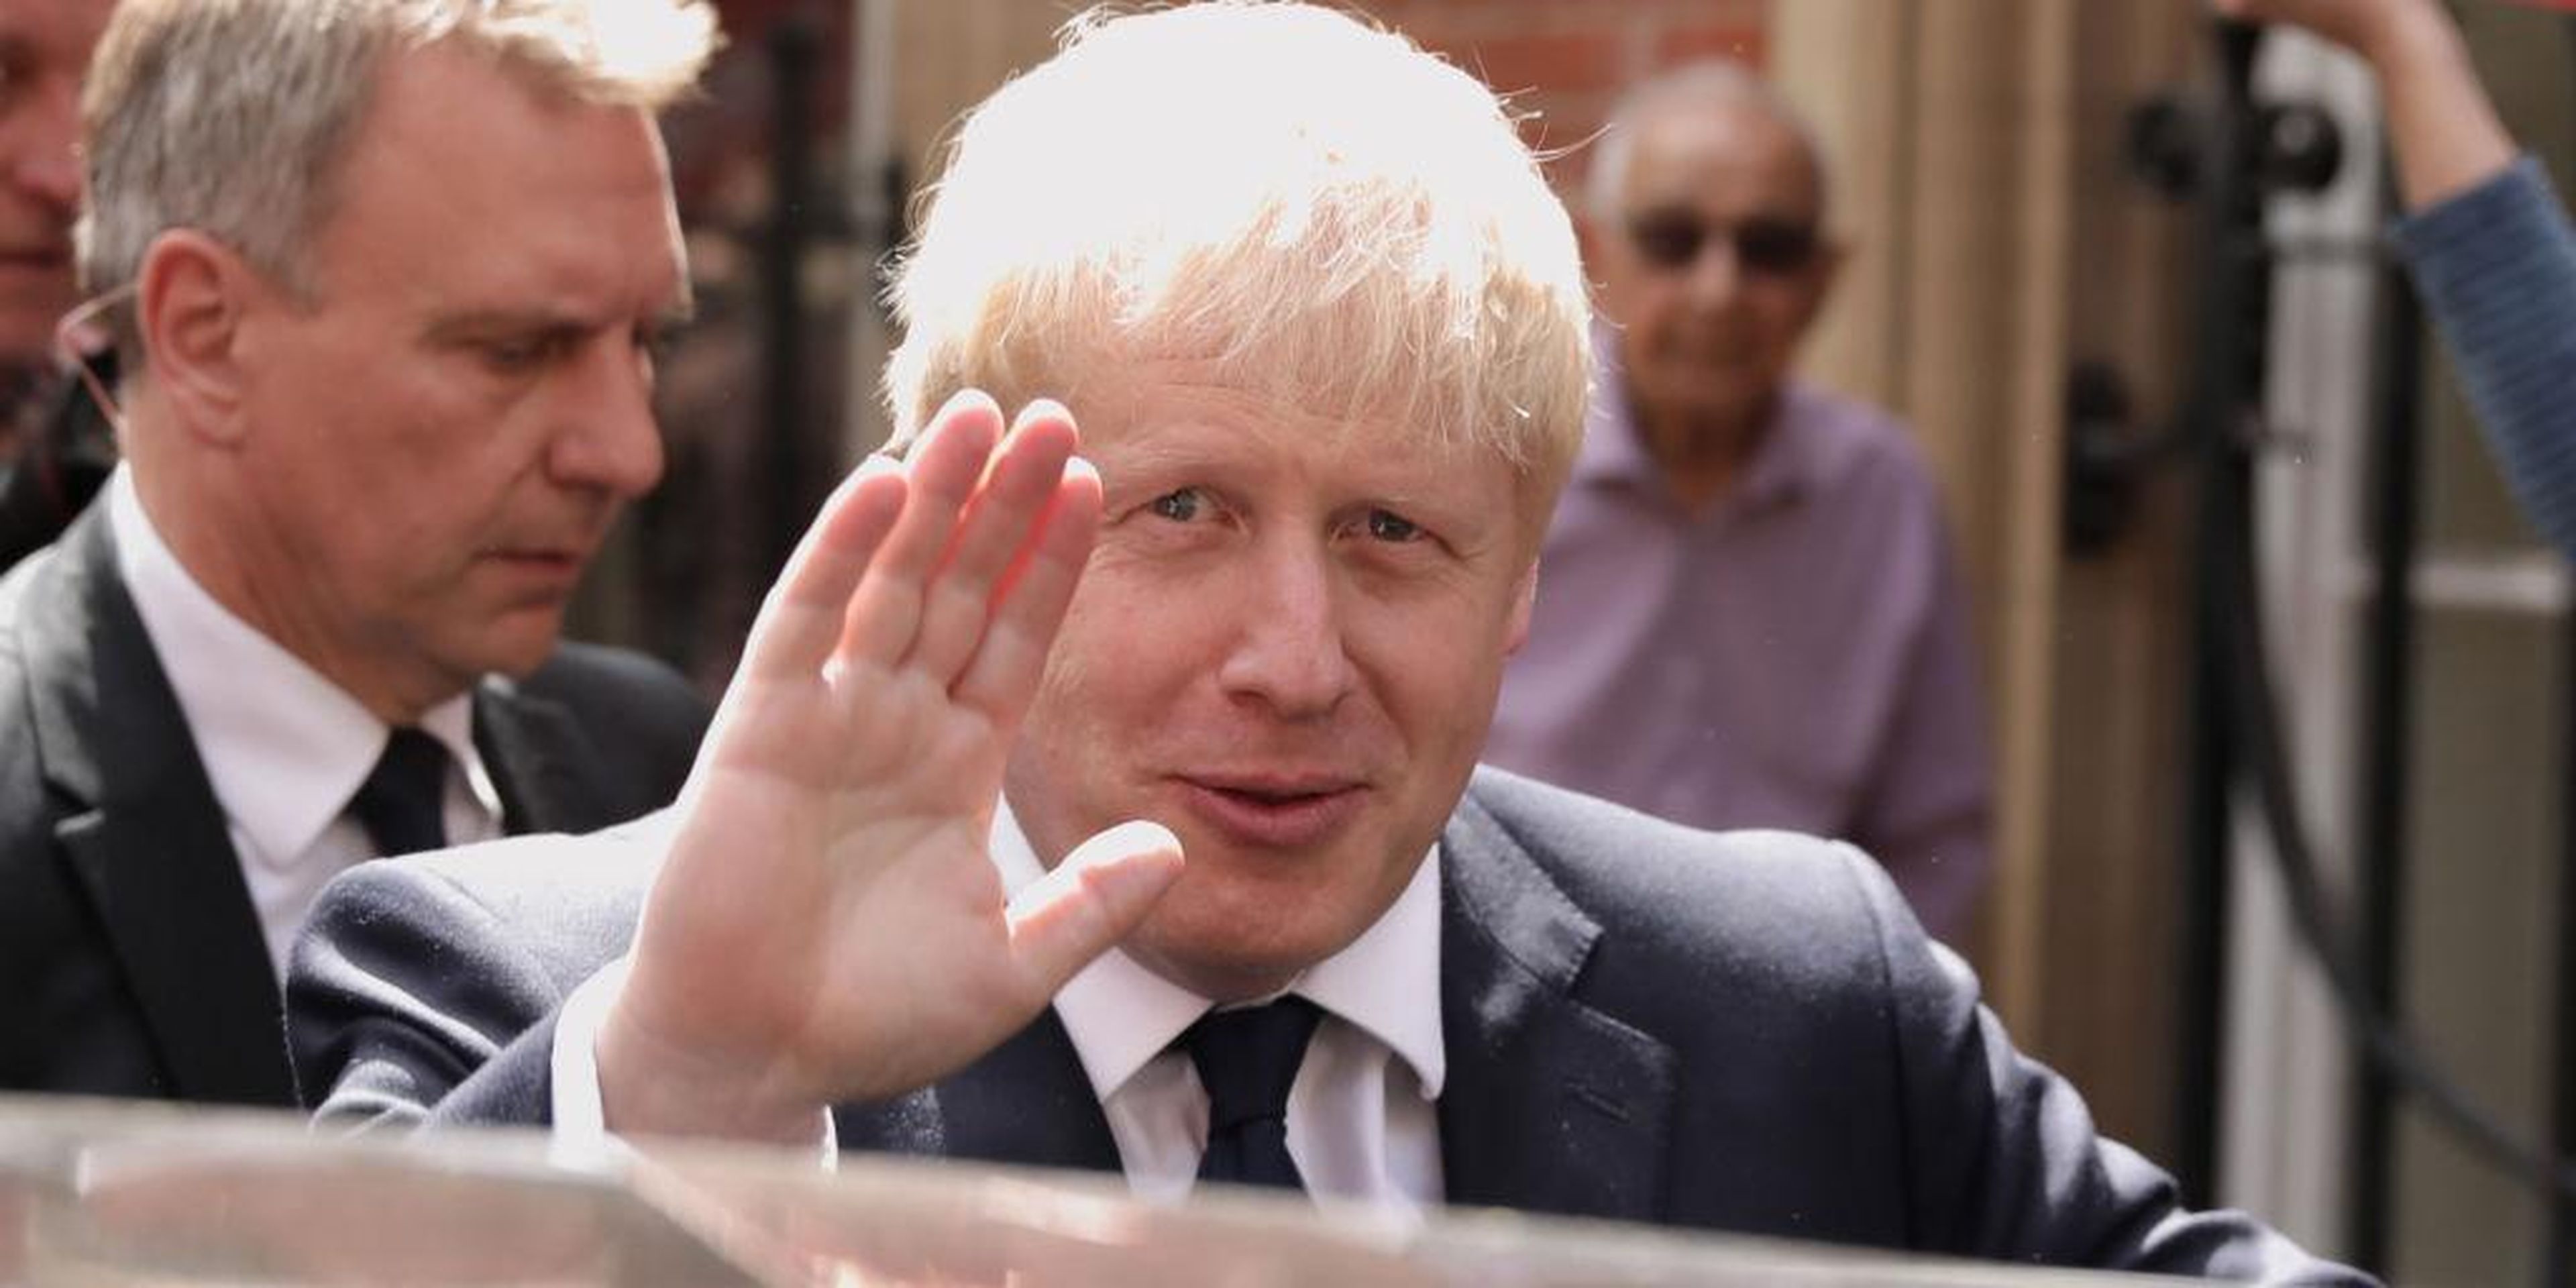 Boris Johnson has won the race to be prime minister